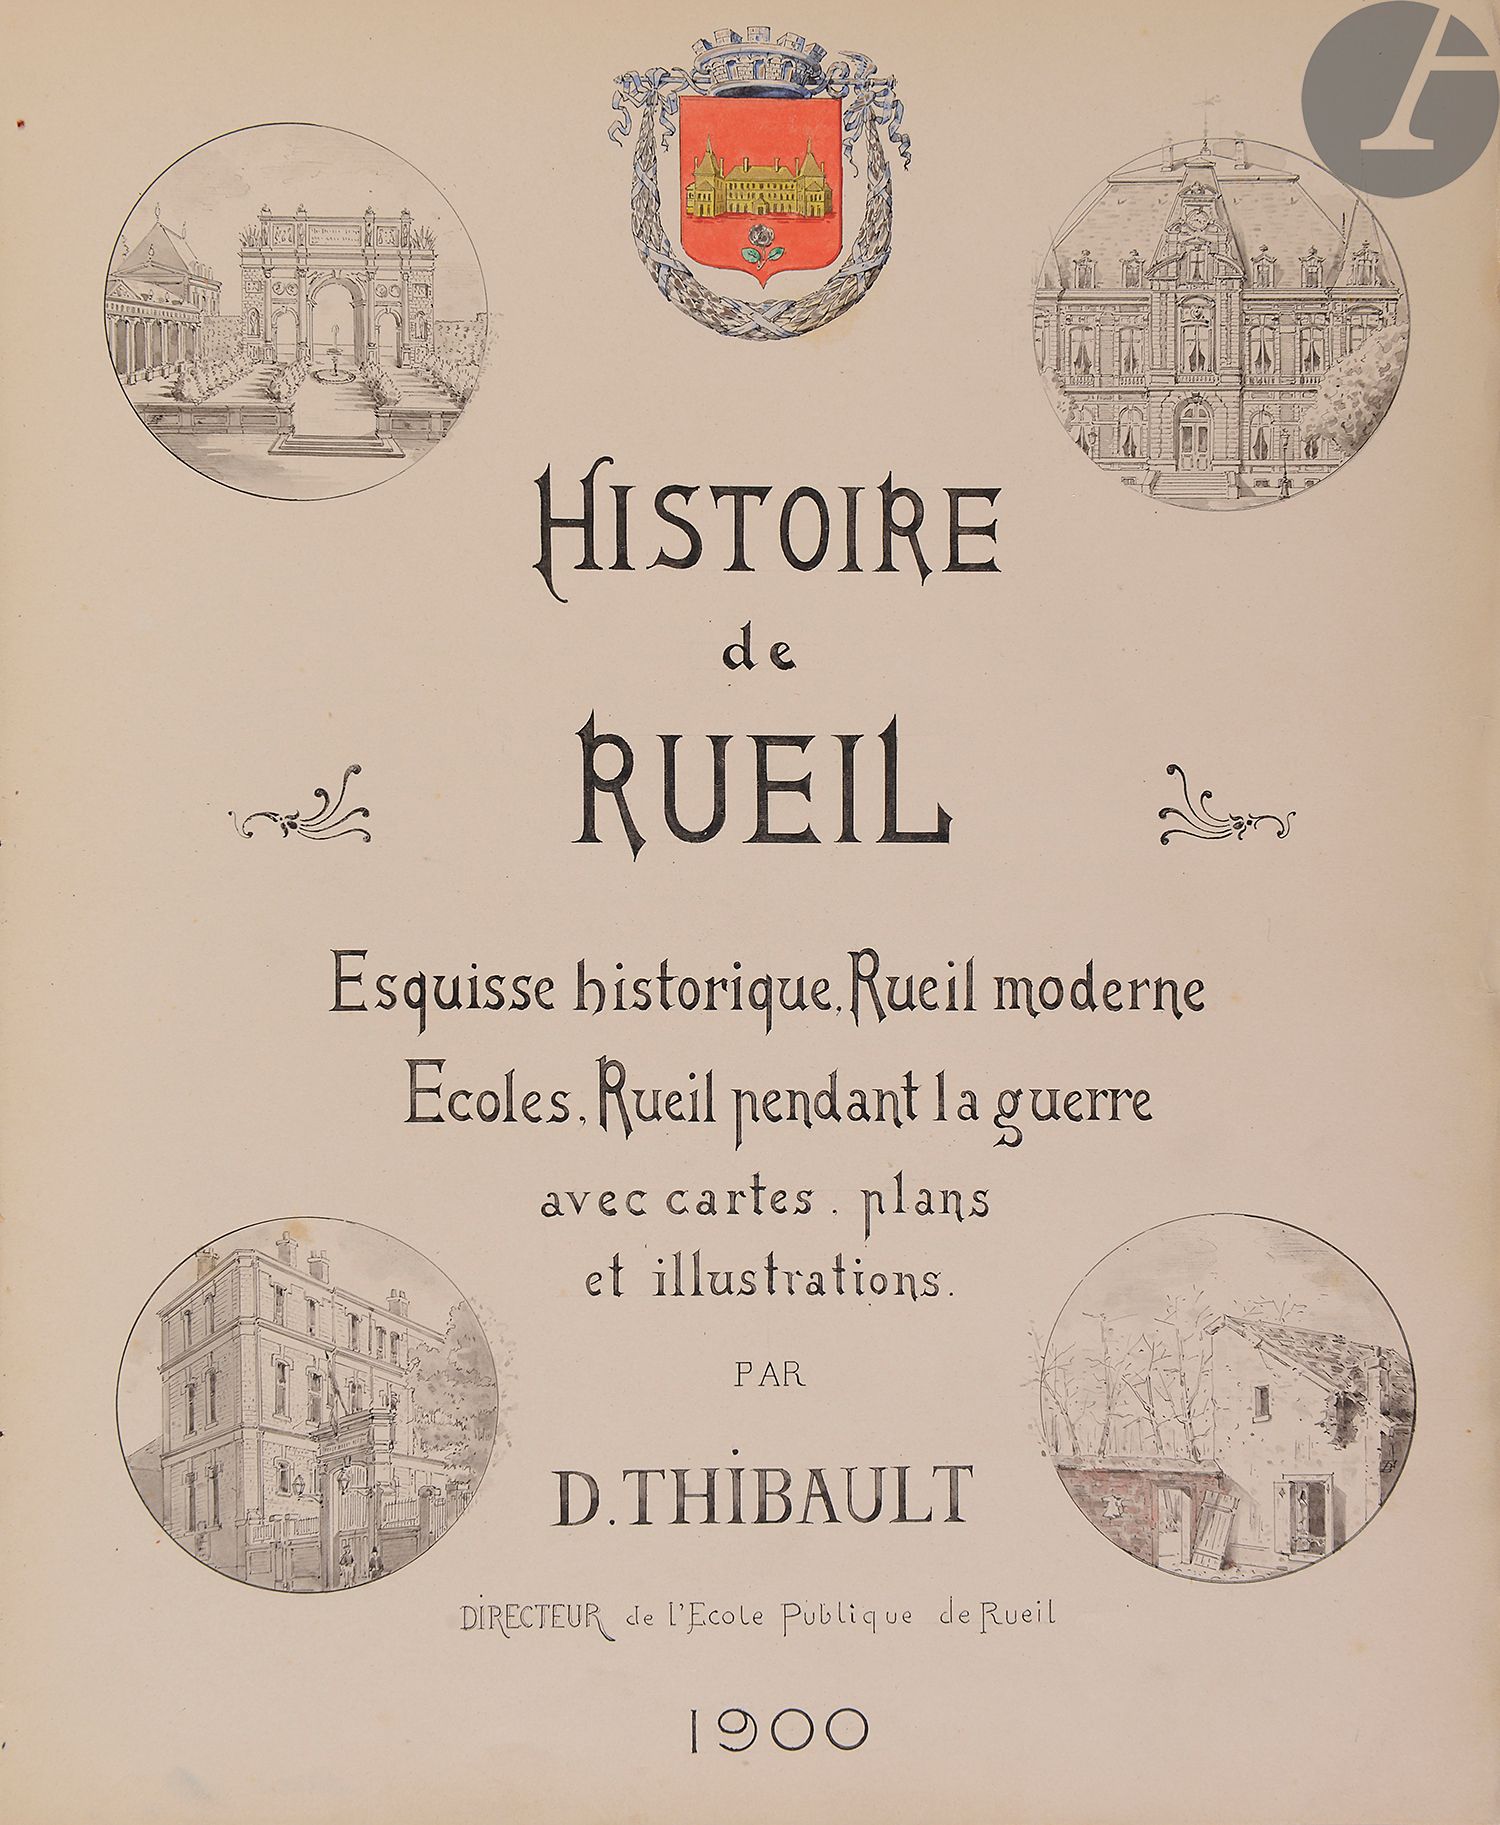 Null [Thibault(D.)]。瑞尔的历史。历史简述。现代瑞尔。学校。战争期间，鲁伊（Rueil）。
法语，纸上手稿。
法国，1900年。

1] bl&hellip;